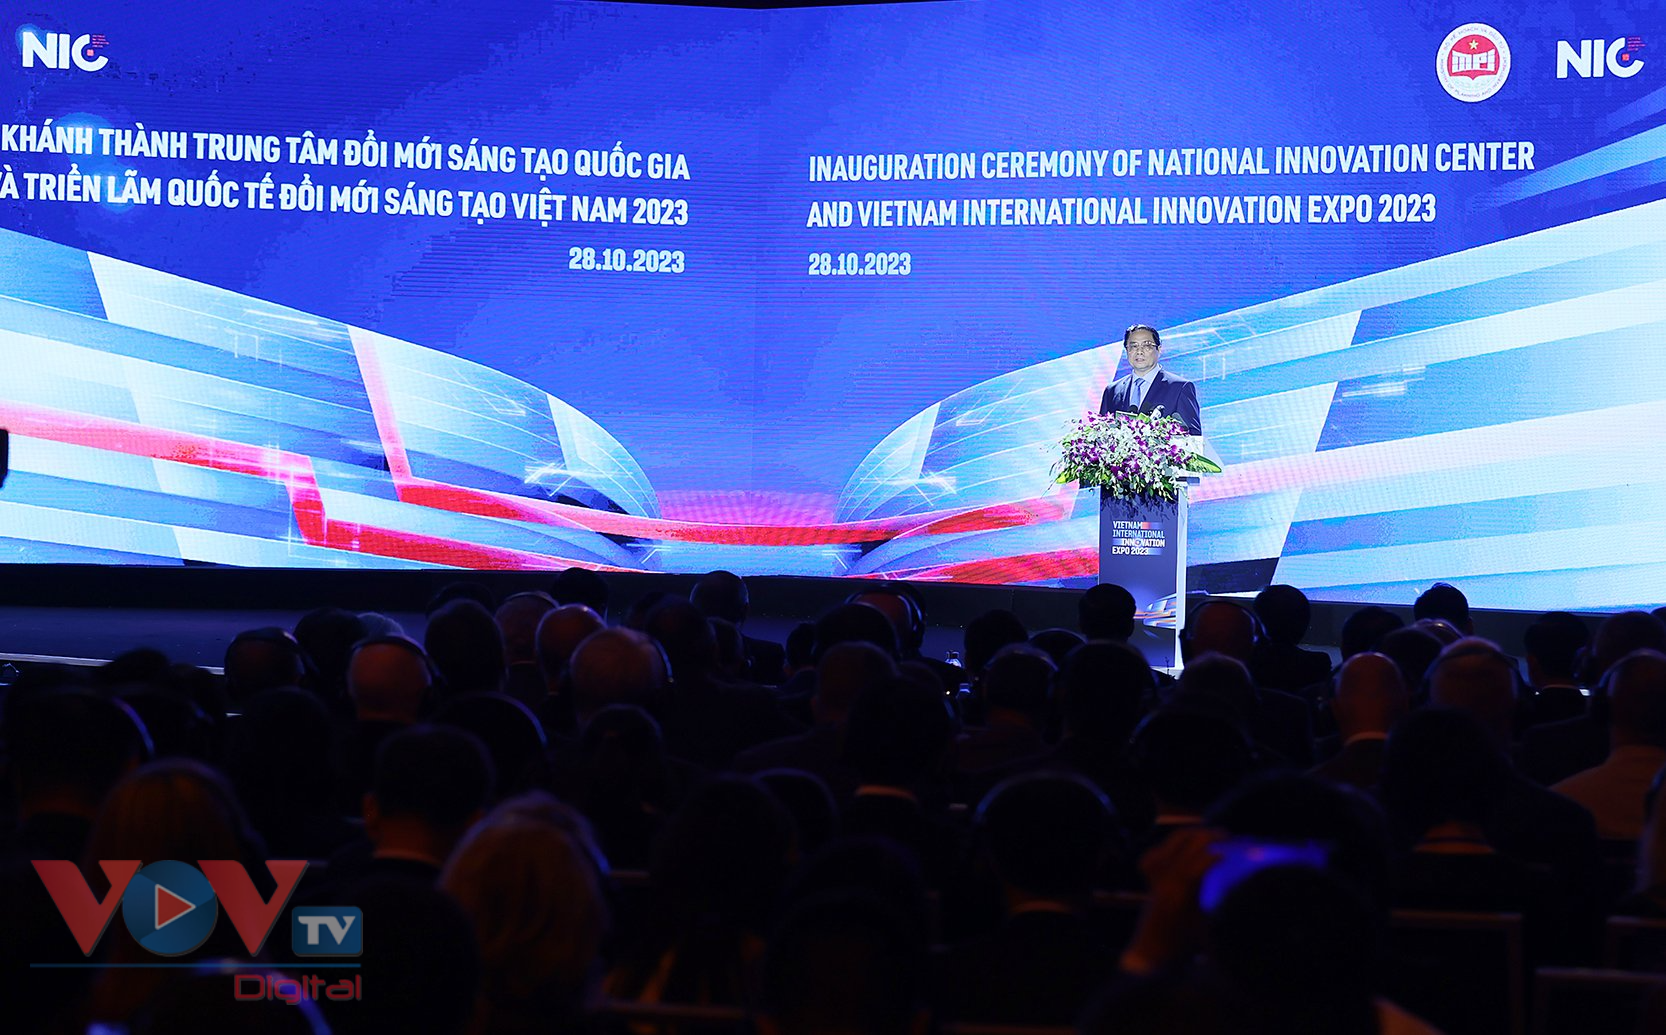 Thủ tướng dự Lễ khánh thành NIC cơ sở Hòa Lạc và khai mạc Triển lãm quốc tế đổi mới sáng tạo Việt Nam 2023 - Ảnh 3.